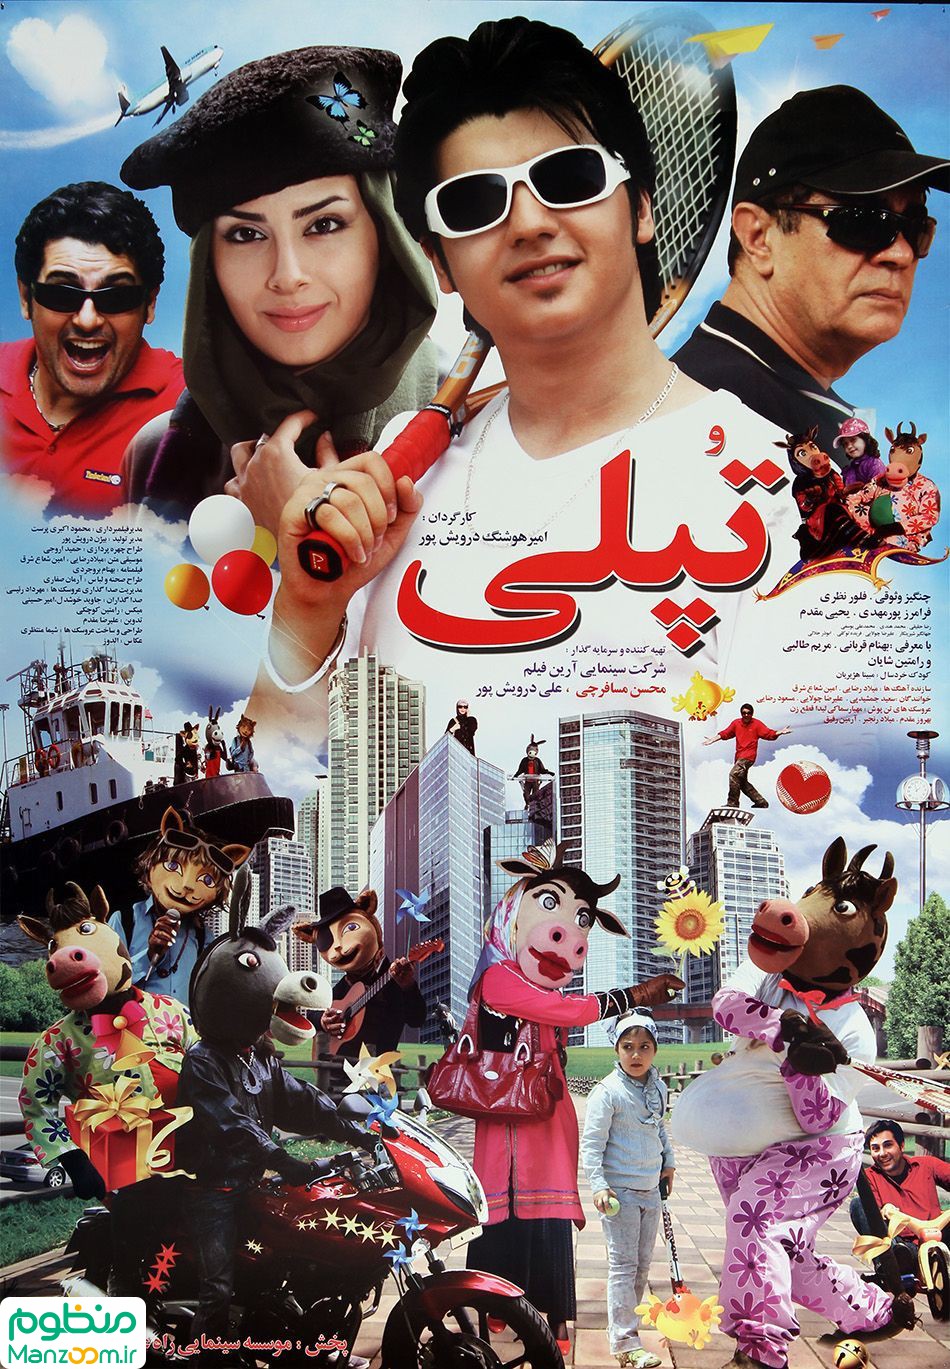  فیلم سینمایی تپلی به کارگردانی هوشنگ درویش‌پور و محمدرضا میرلوحی